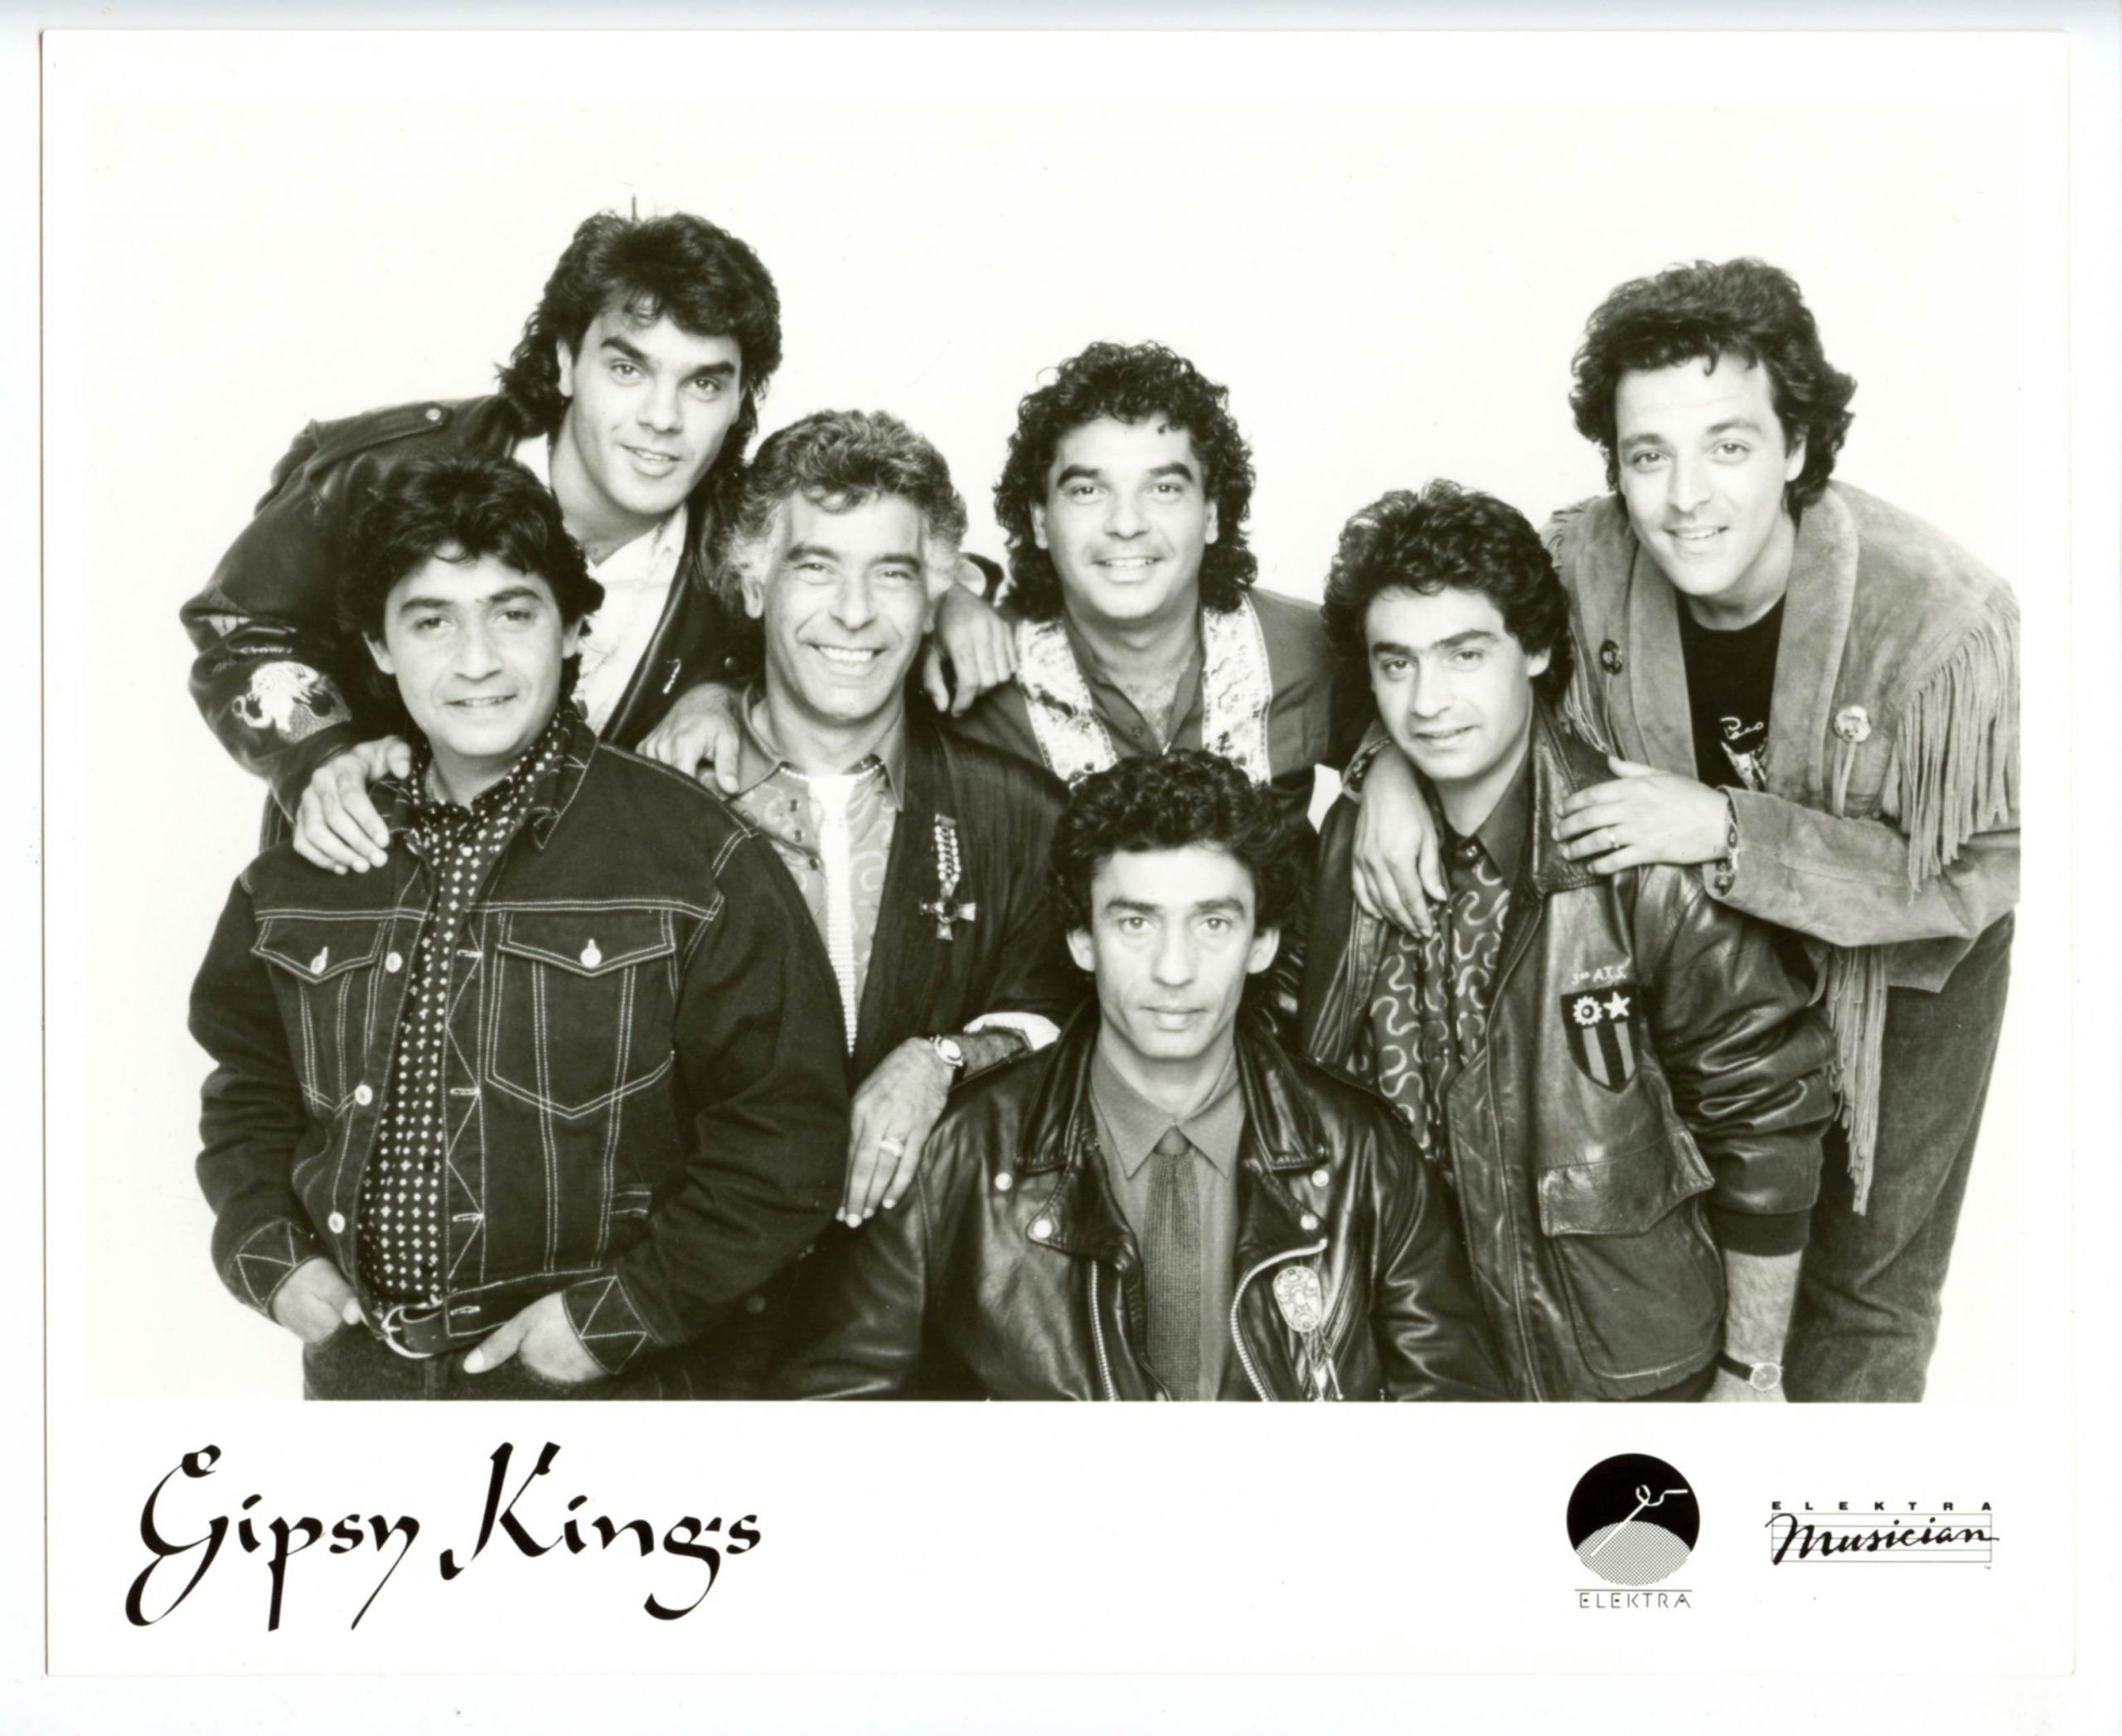 Gipsy Kings Photo 1980s Elektra Records